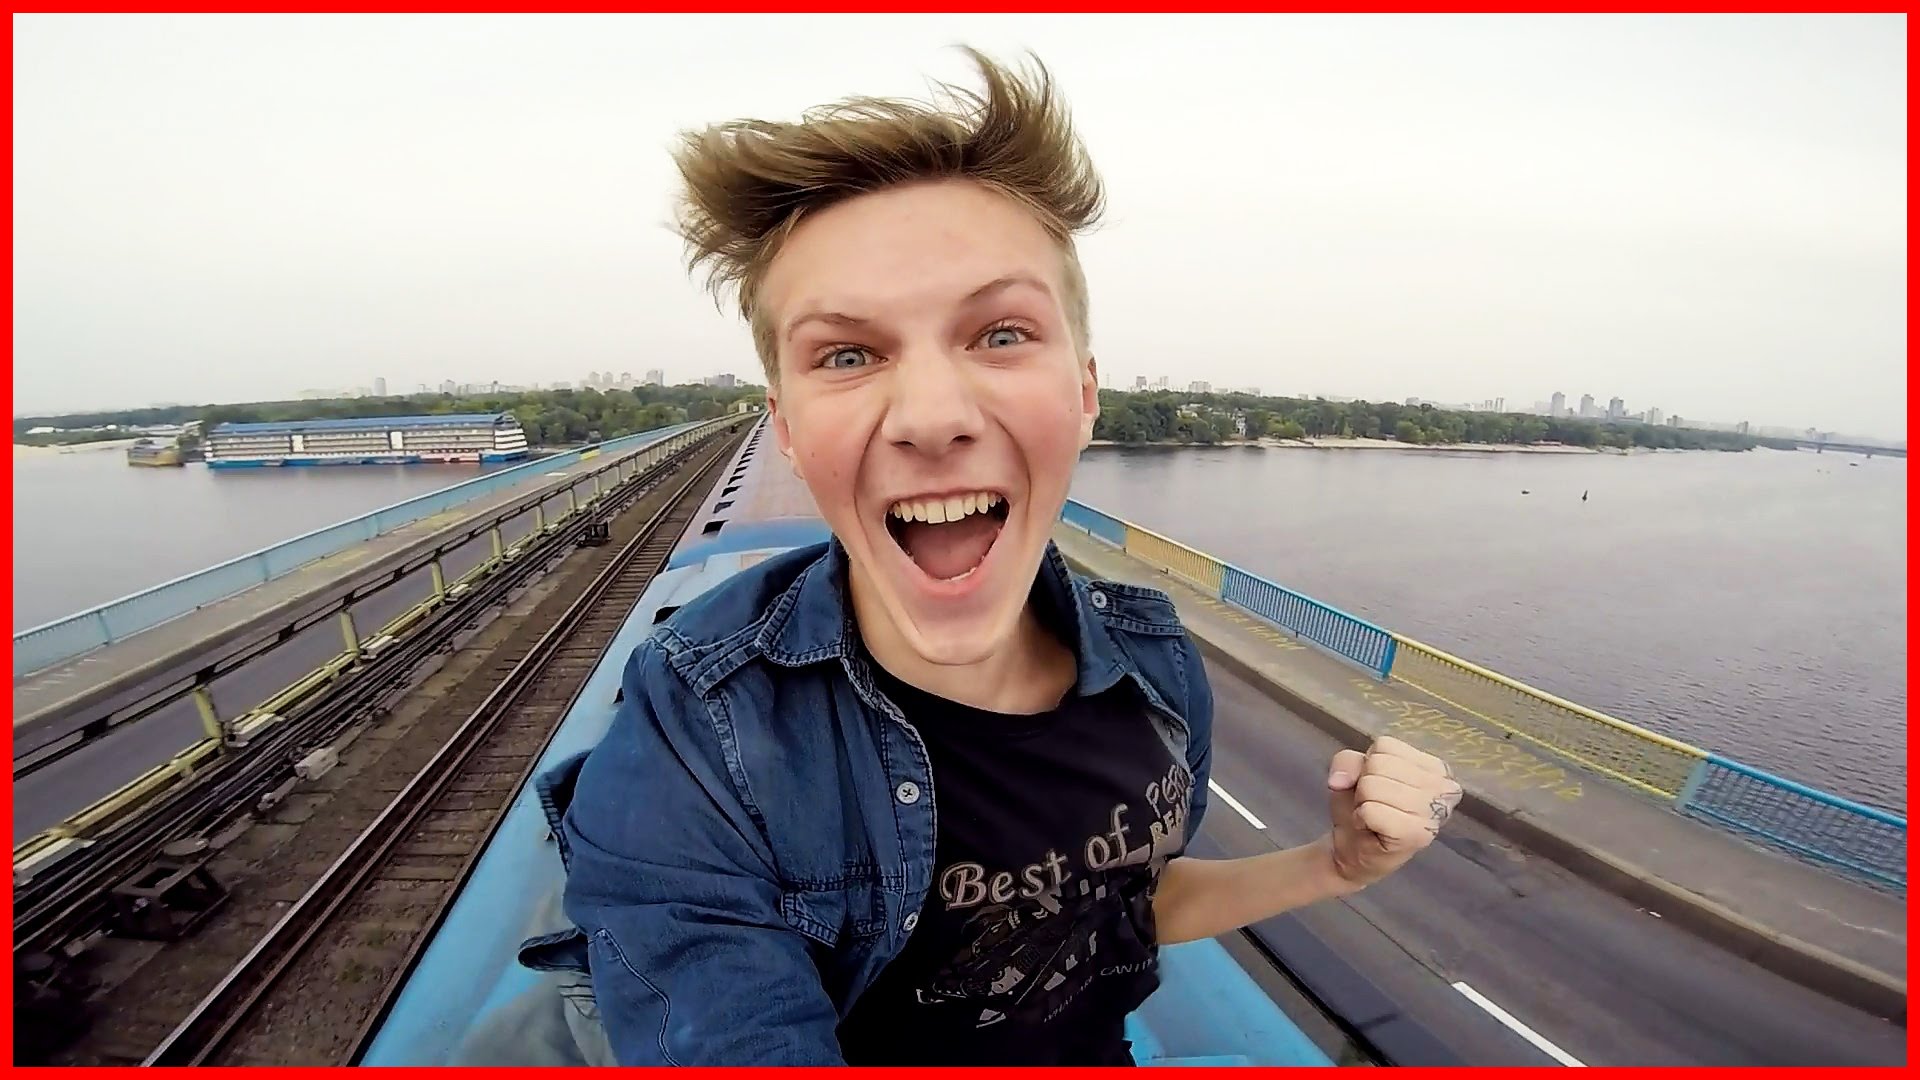 Vlogger ucraniano faz viagem arriscada em cima de comboio